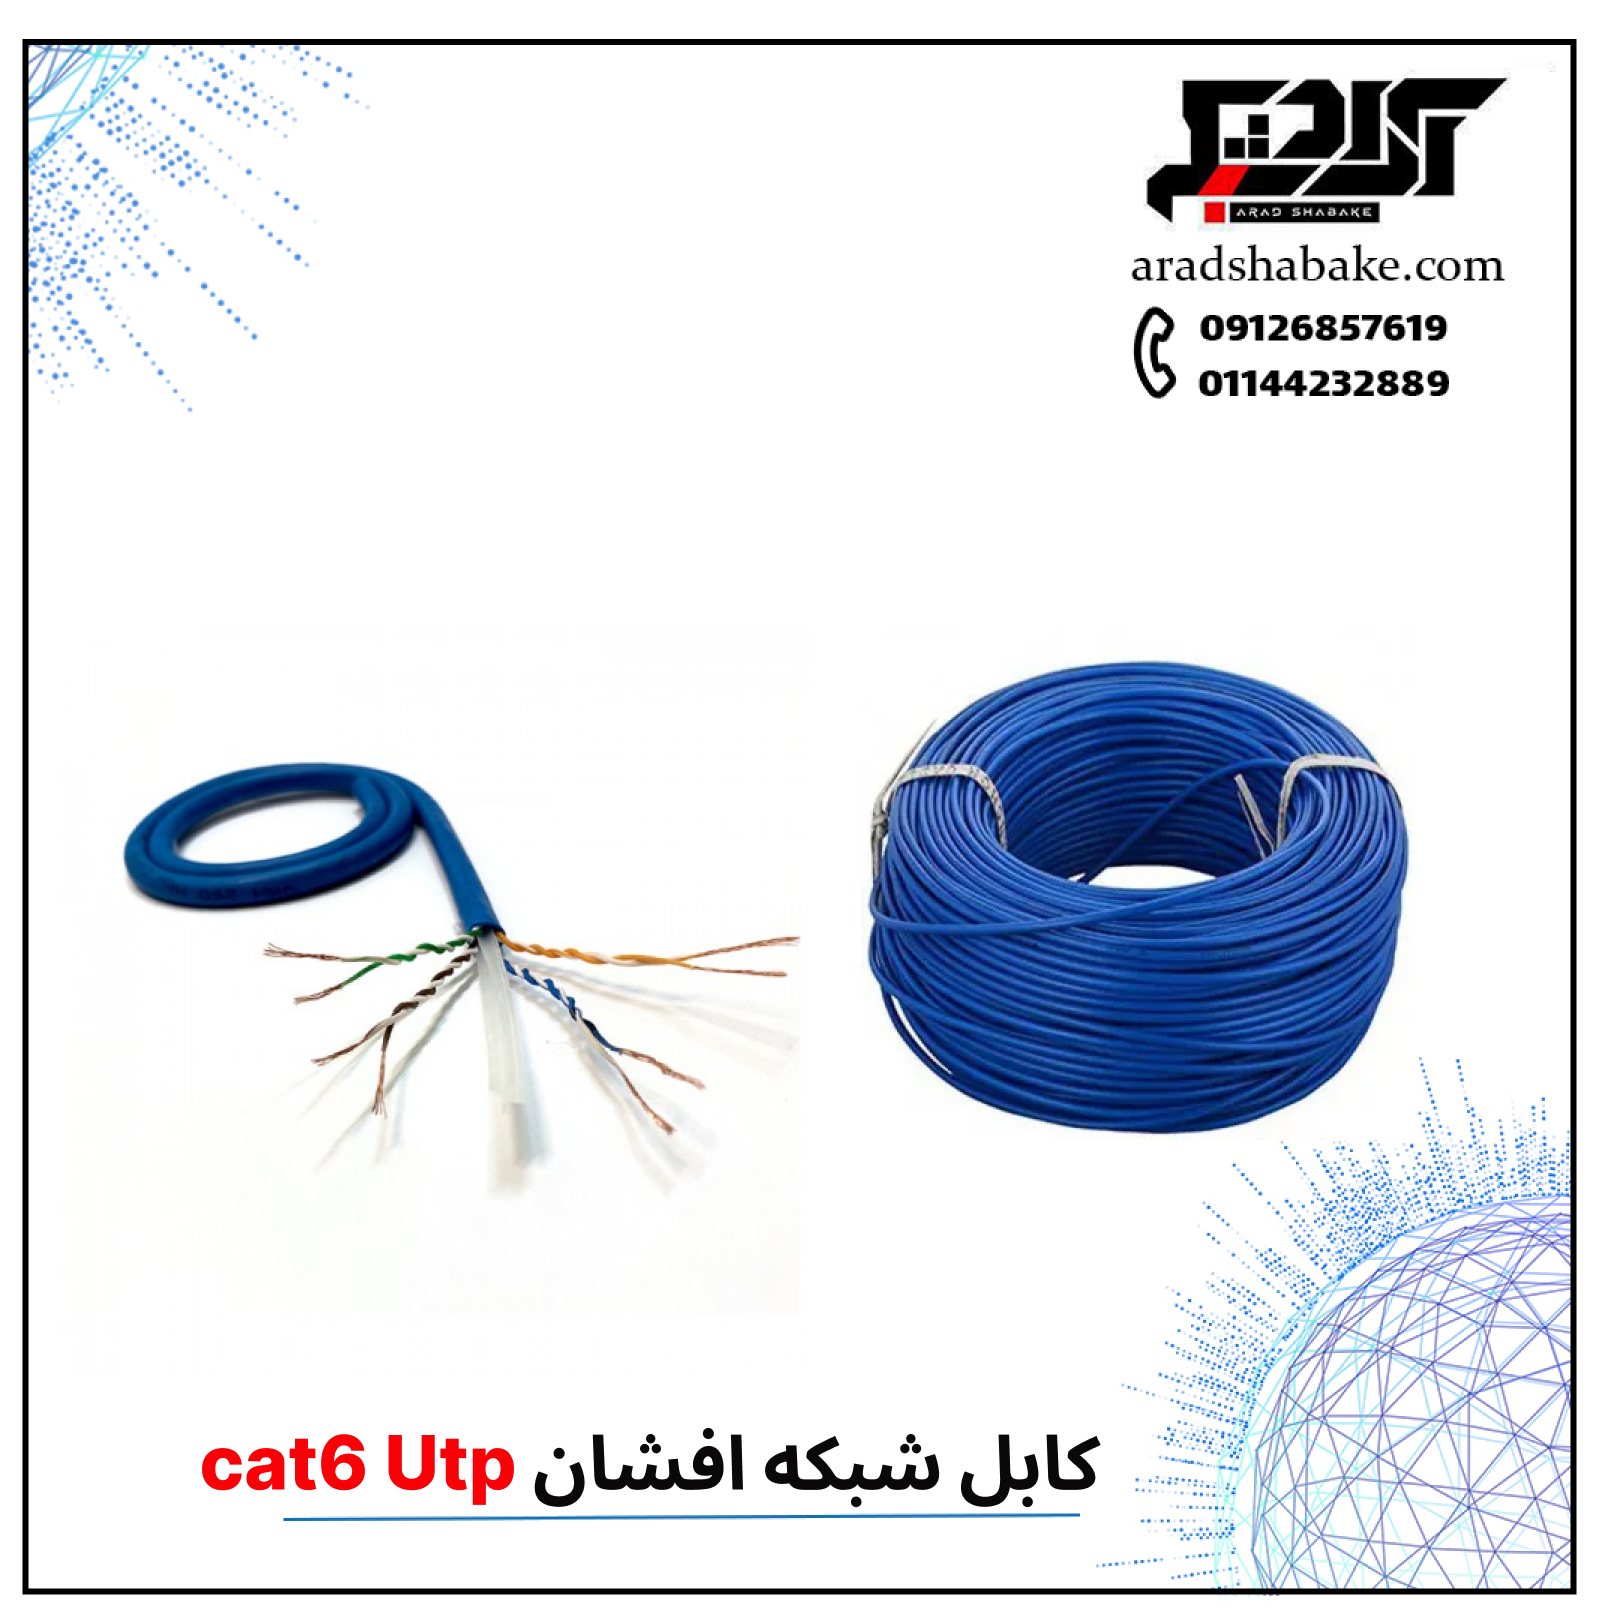 کابل شبکه افشان cat6 Utp